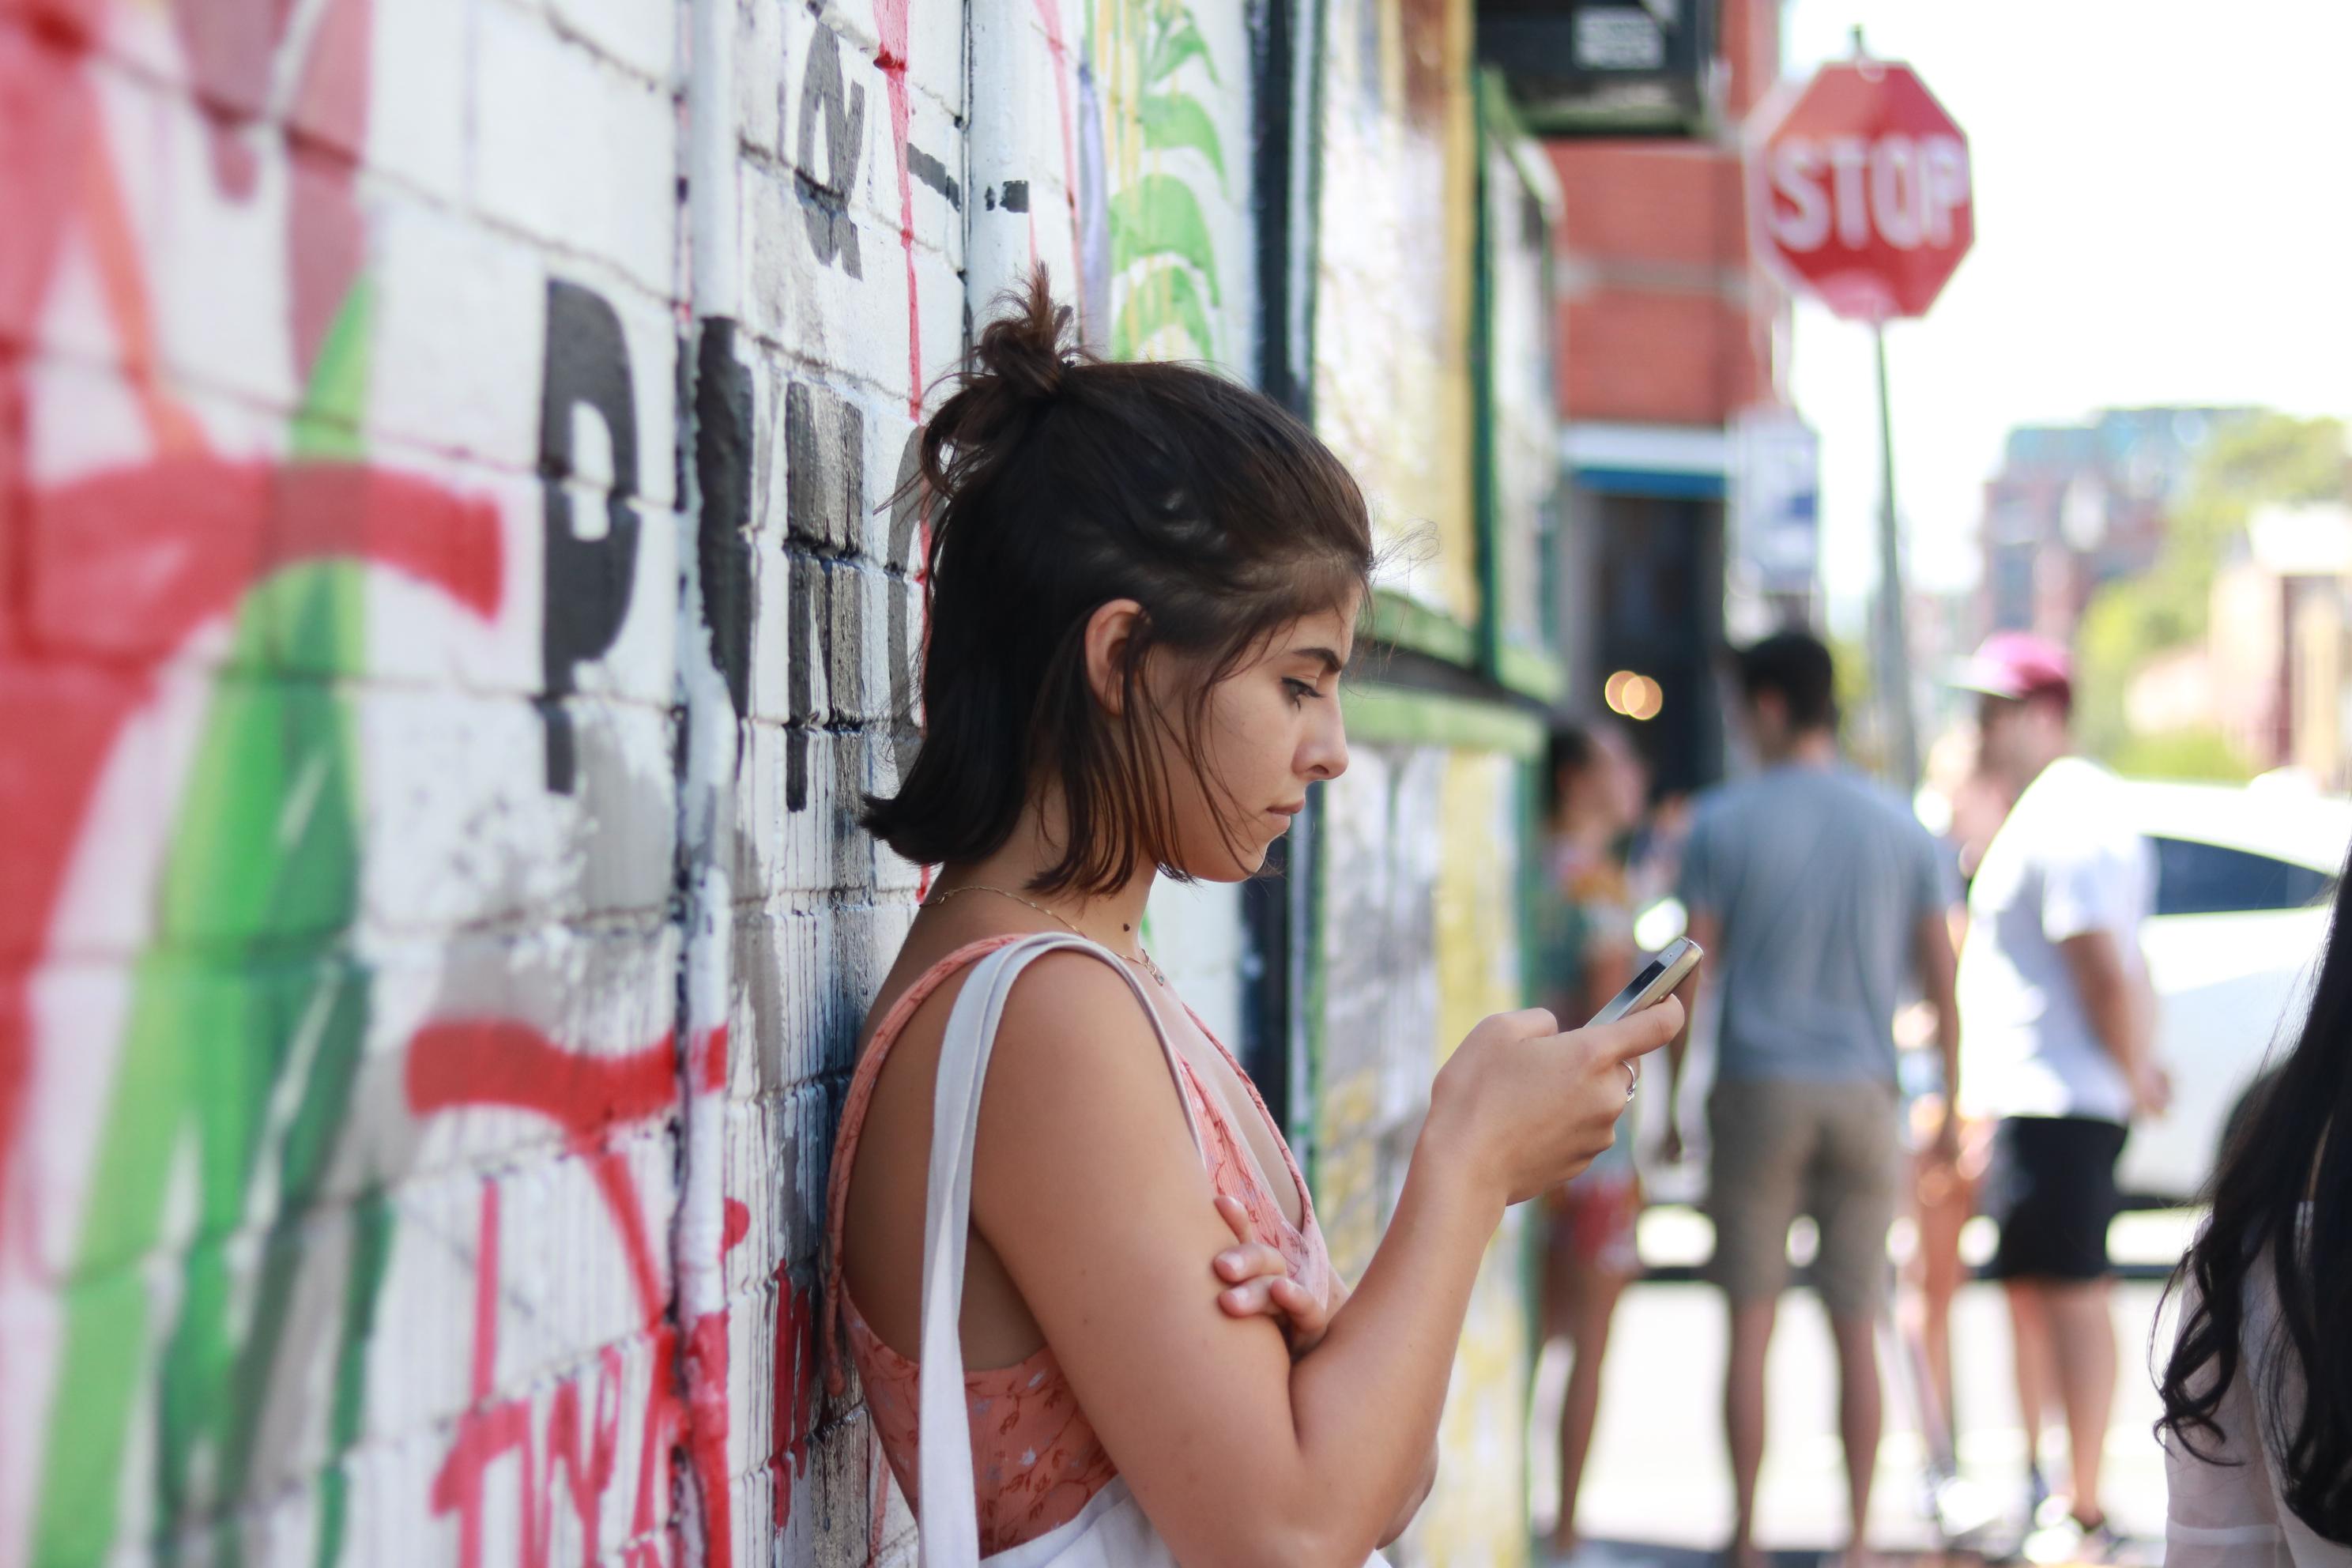 在附近的彩繪牆拍下的一個女孩滑手機等人的照片